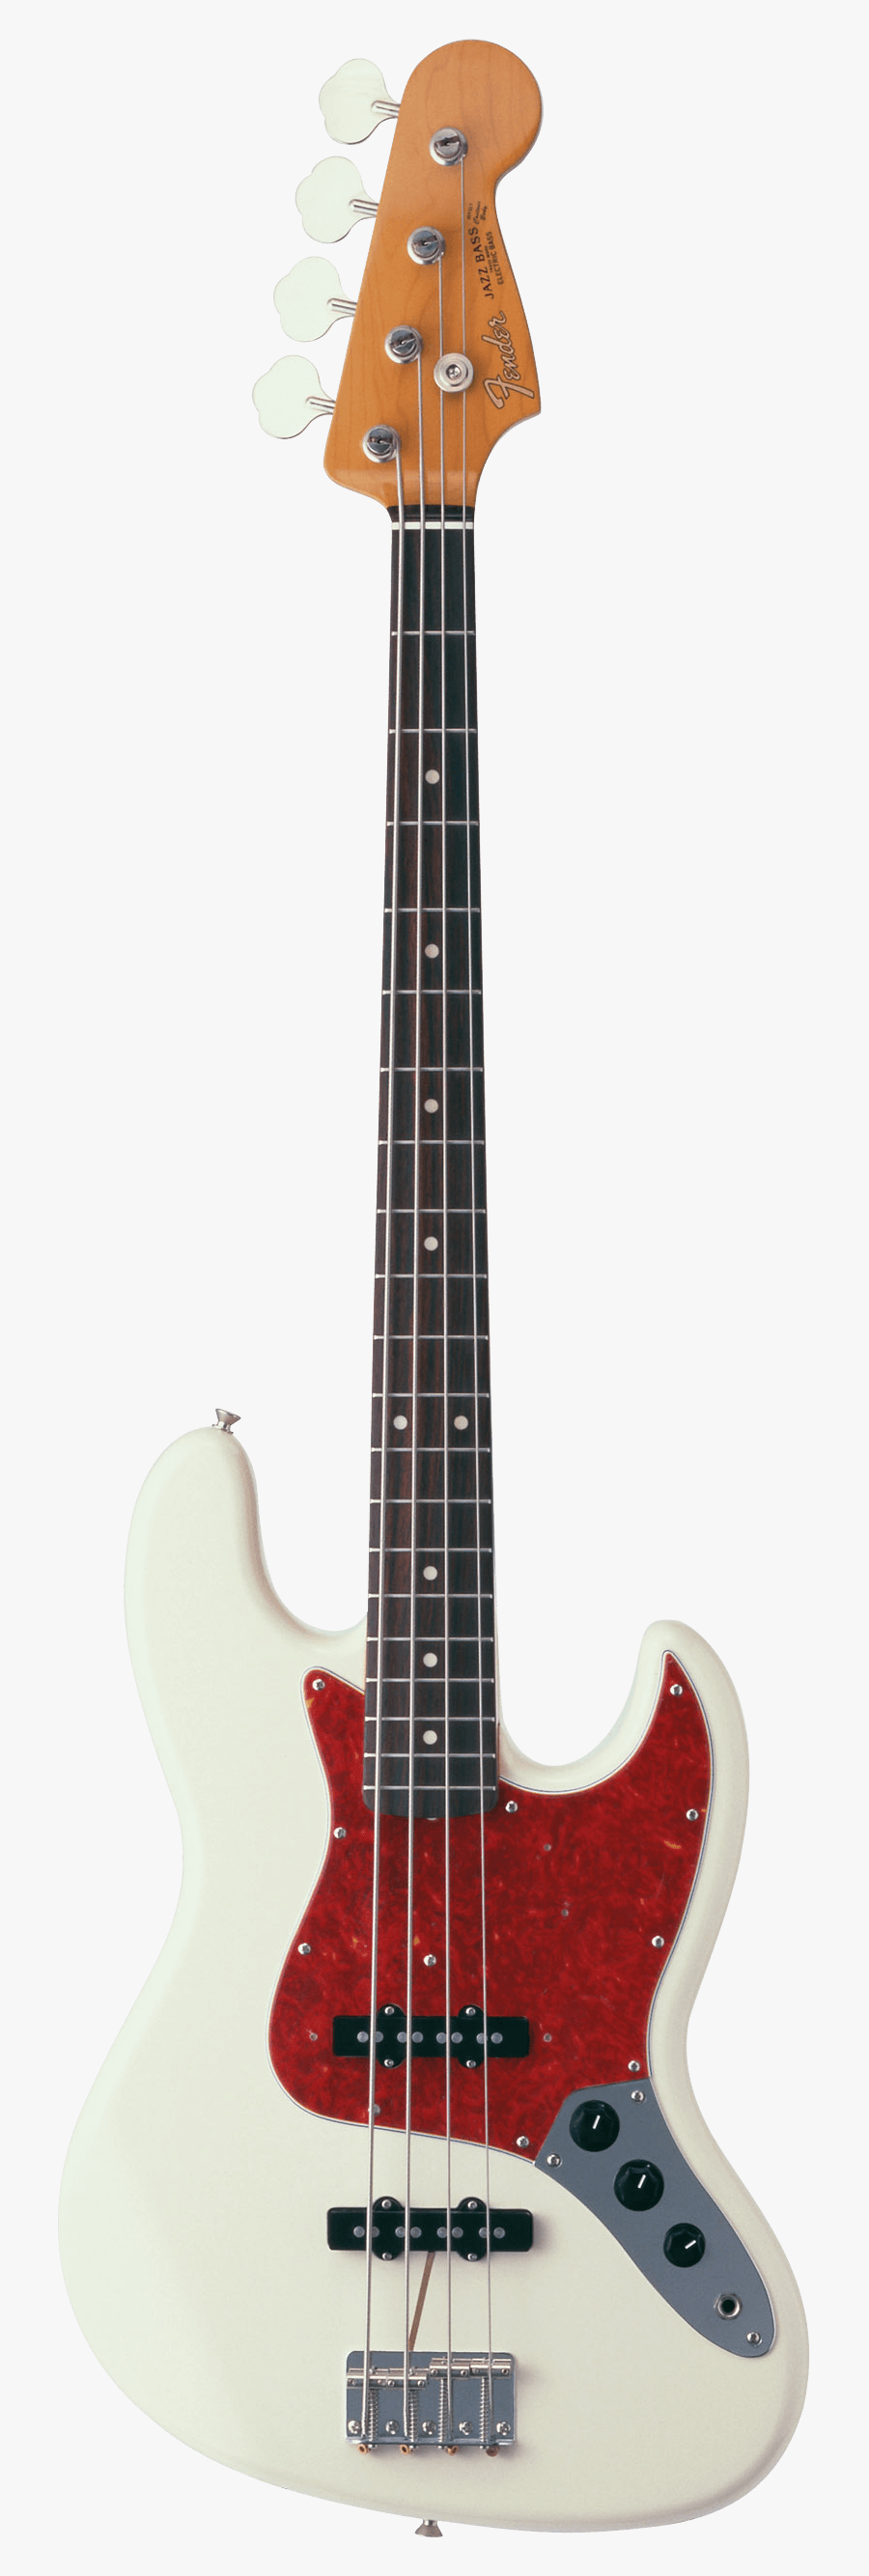 Guitar Clipart Cool Guitar - Fender Jazz Bass, Transparent Clipart